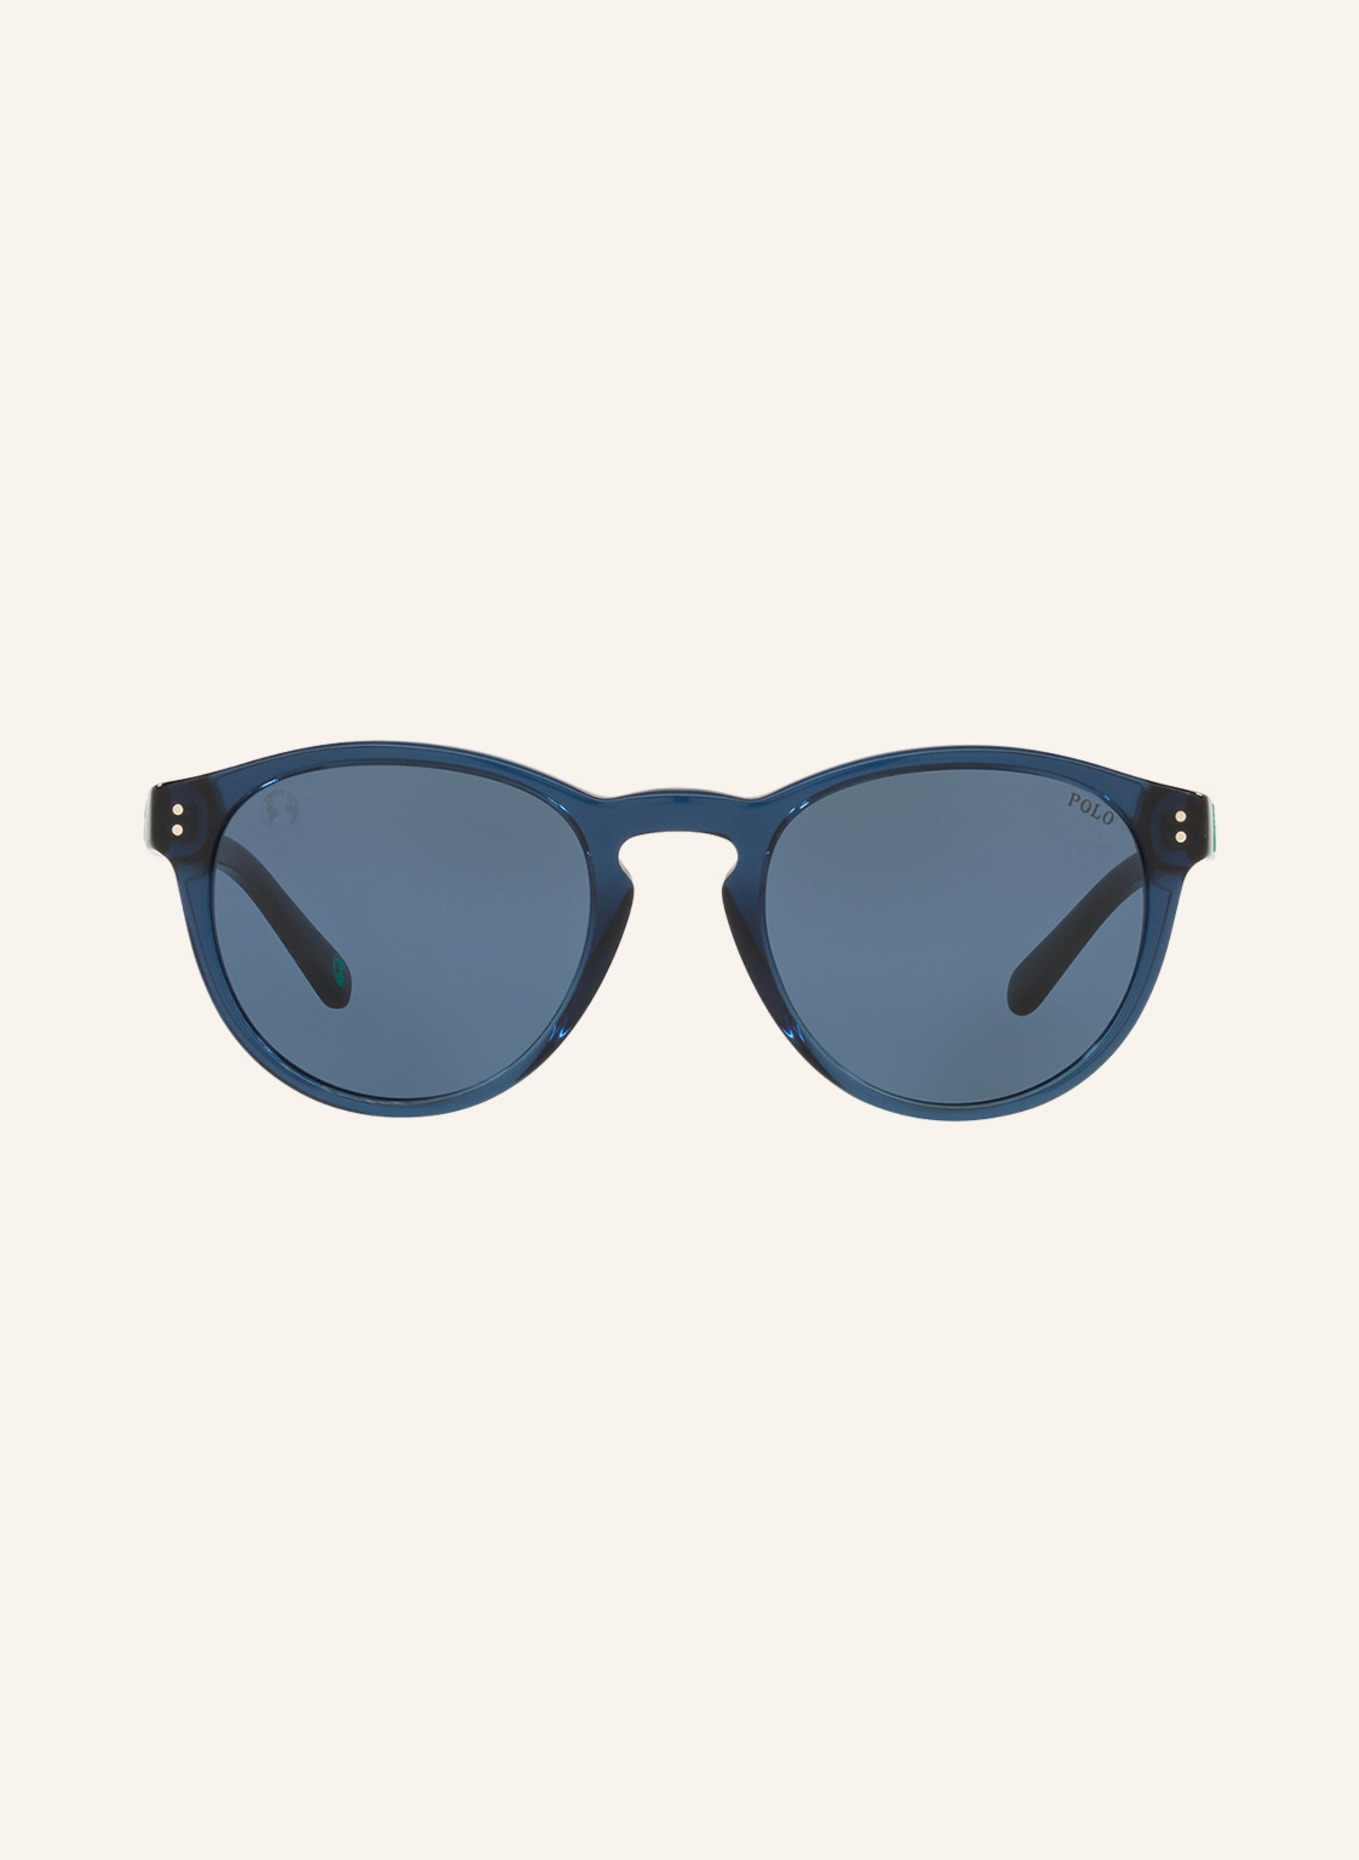 POLO RALPH LAUREN Sunglasses PH4172, Color: 595580 - BLUE/BLUE (Image 2)